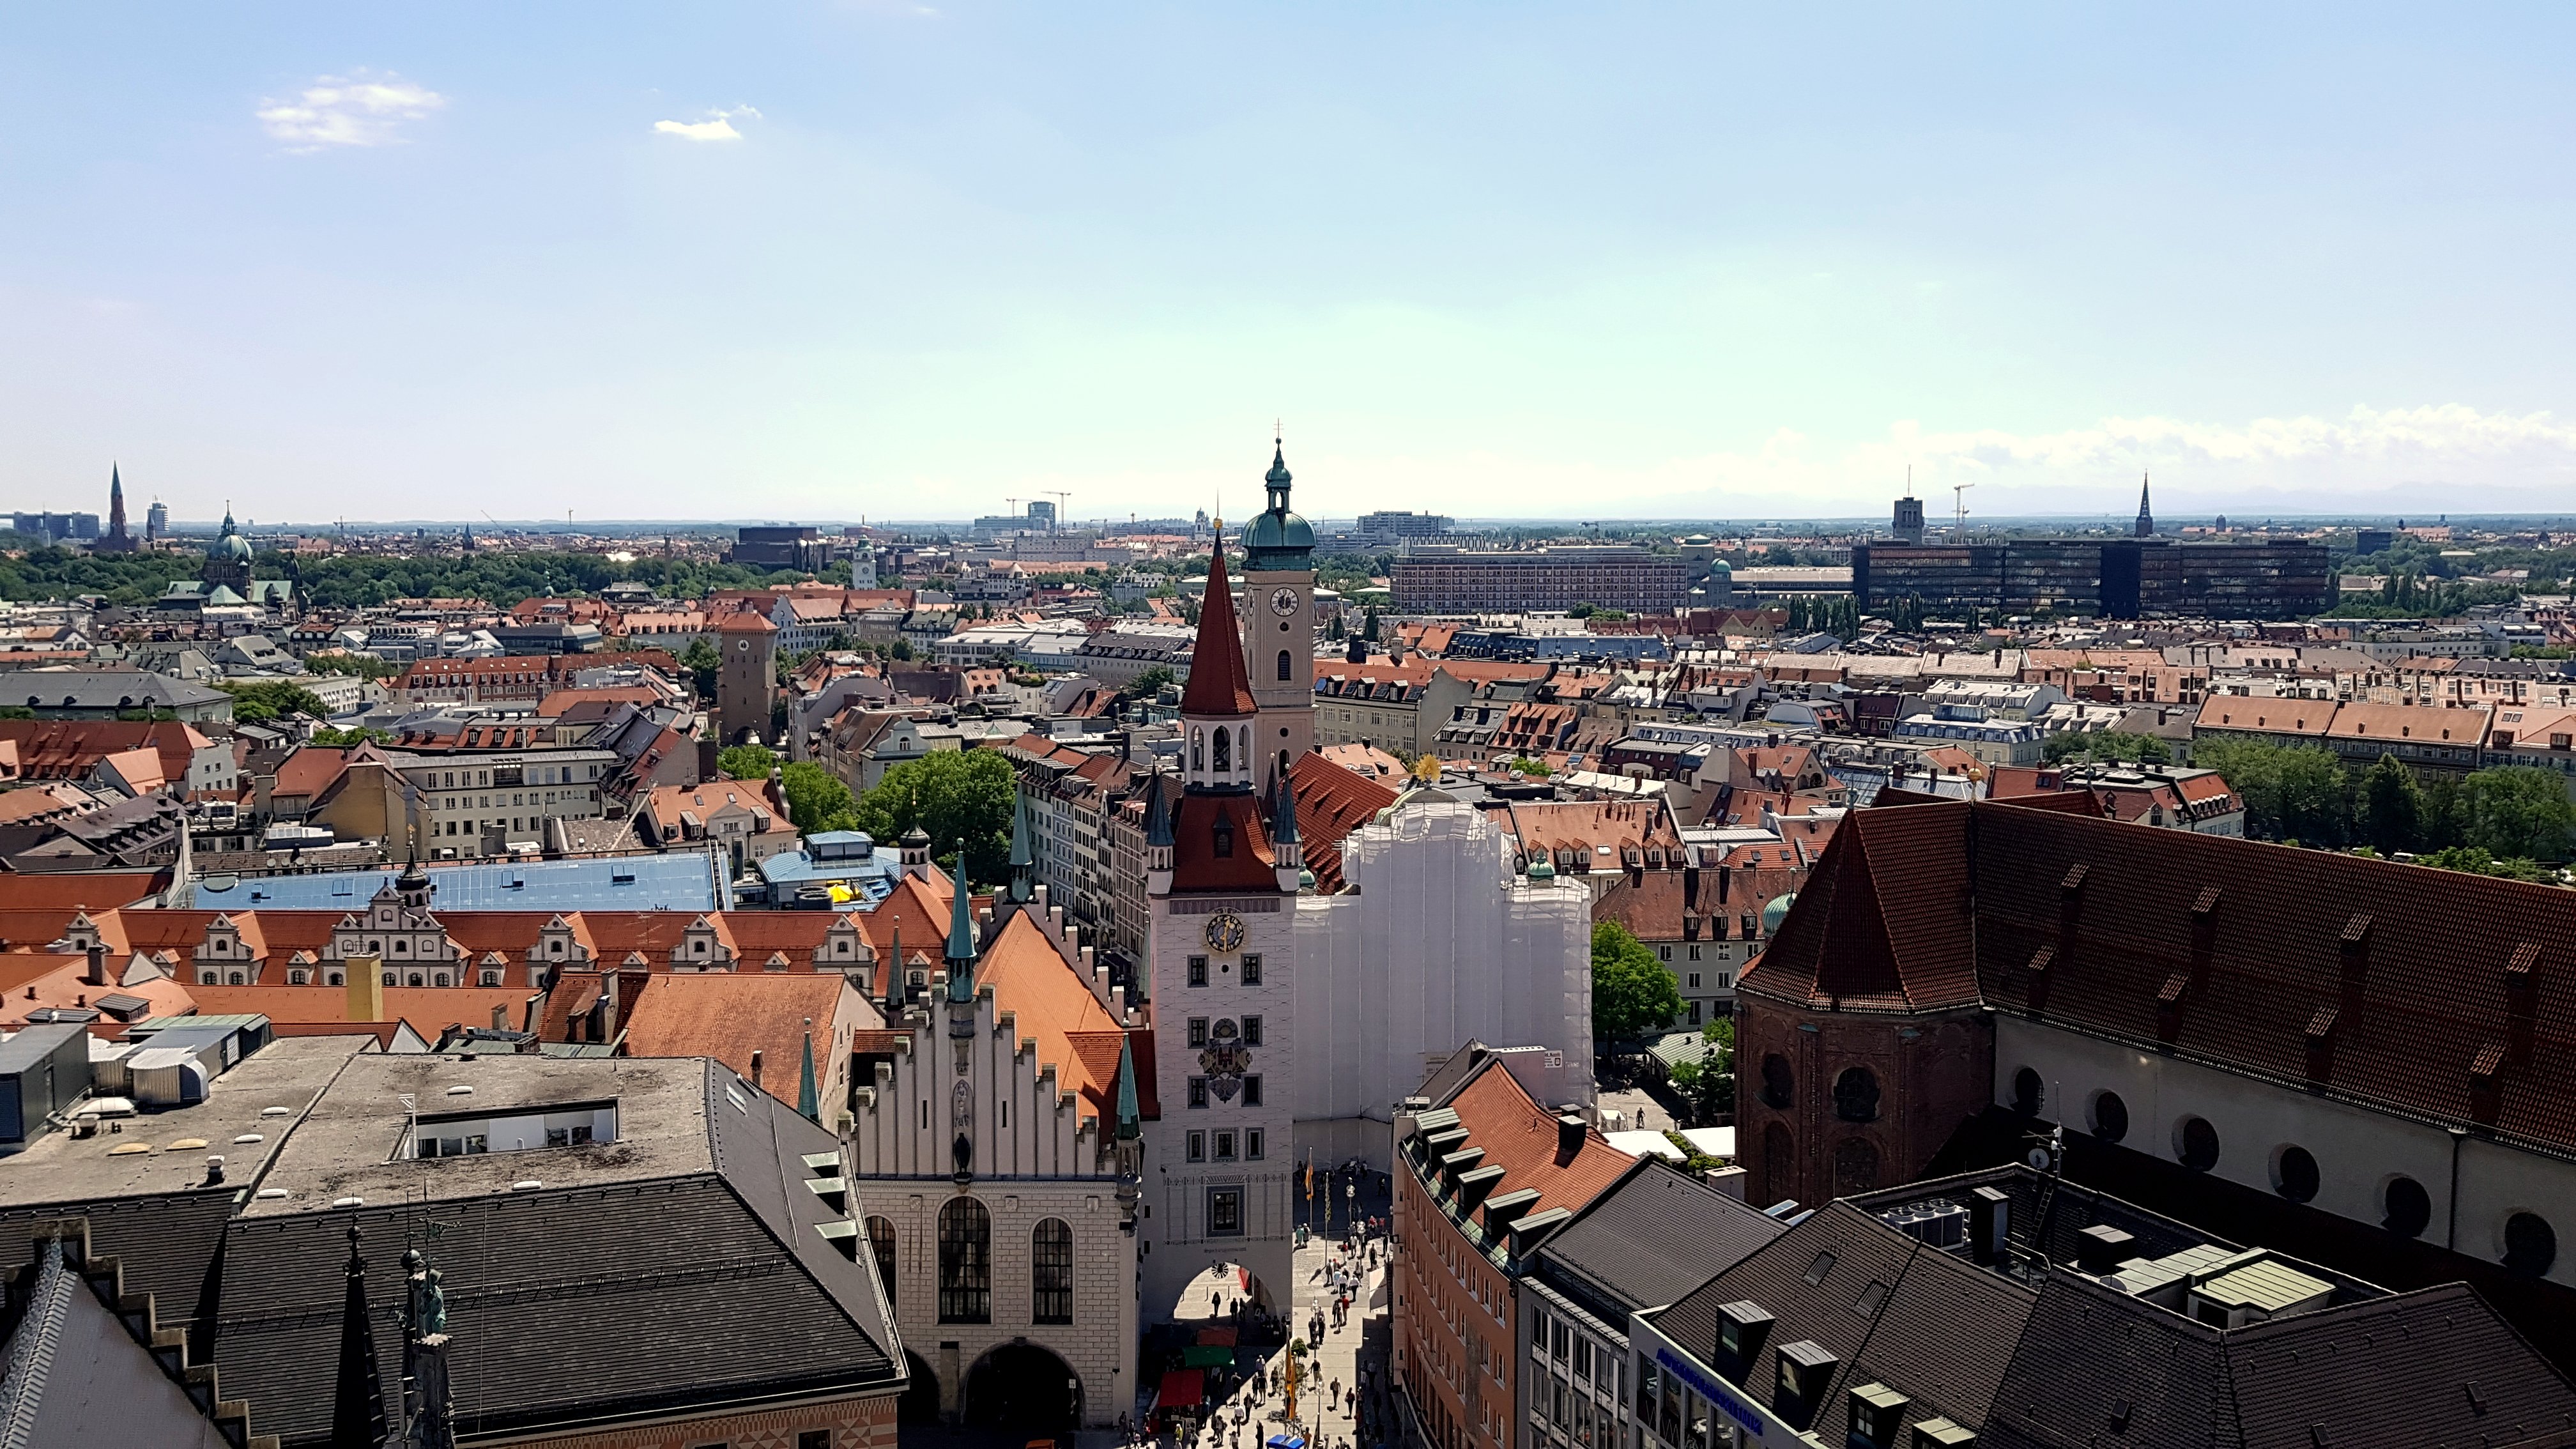 Blick von oben auf eine Altstadt, im Zentrum des Bildes sieht man den Turm des Alten Rathauses.